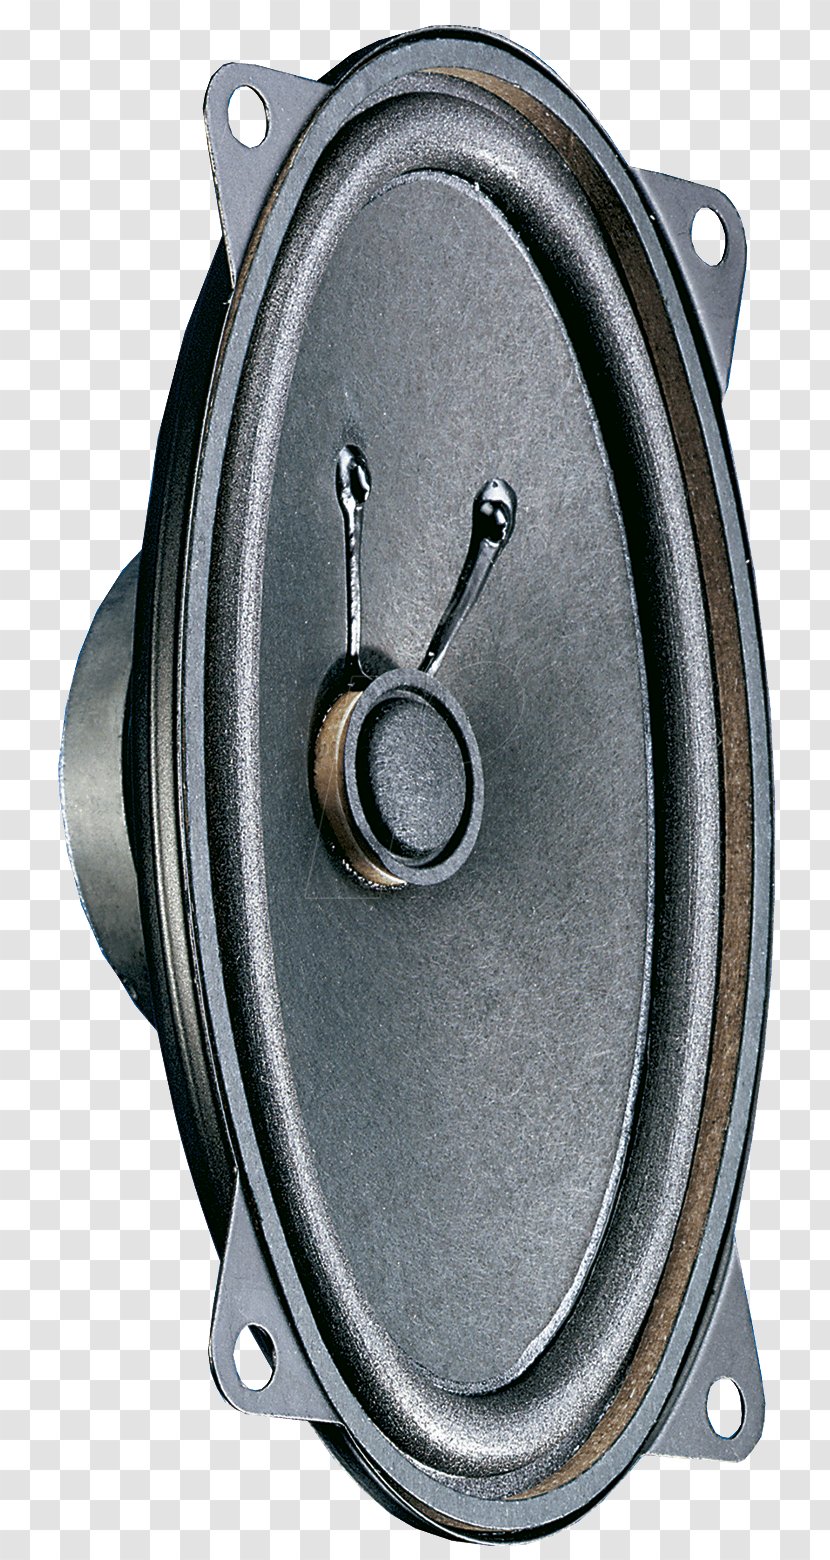 Computer Speakers Loudspeaker Ohm Subwoofer Full-range Speaker - Technology - Vis Identification System Transparent PNG